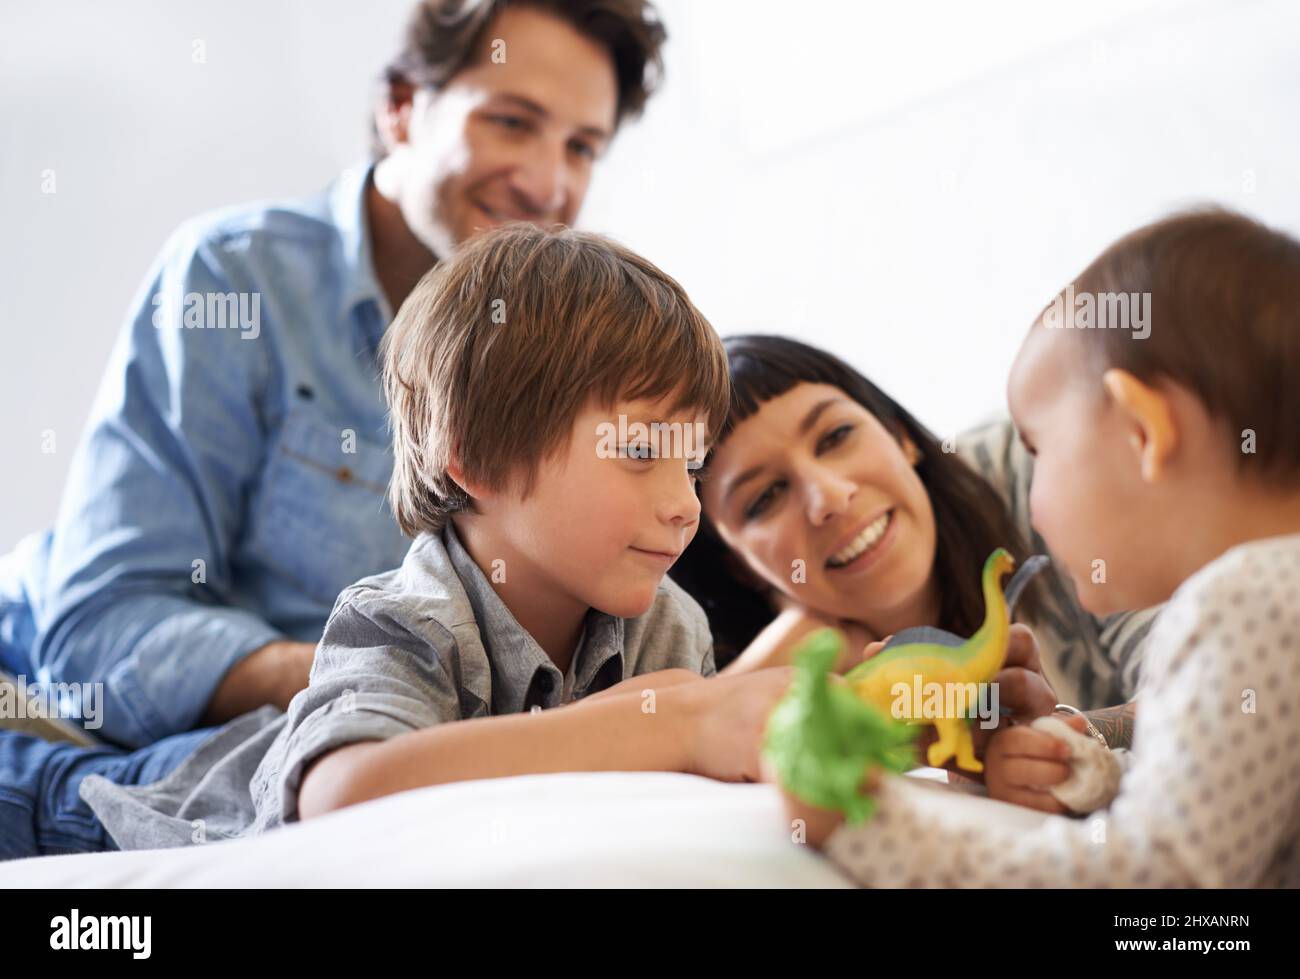 Big Brother Bonding. Aufnahme eines glücklichen Bruders und einer glücklichen Schwester, die mit ihren Spielzeugen spielen, während ihre Eltern auf sie schauen. Stockfoto